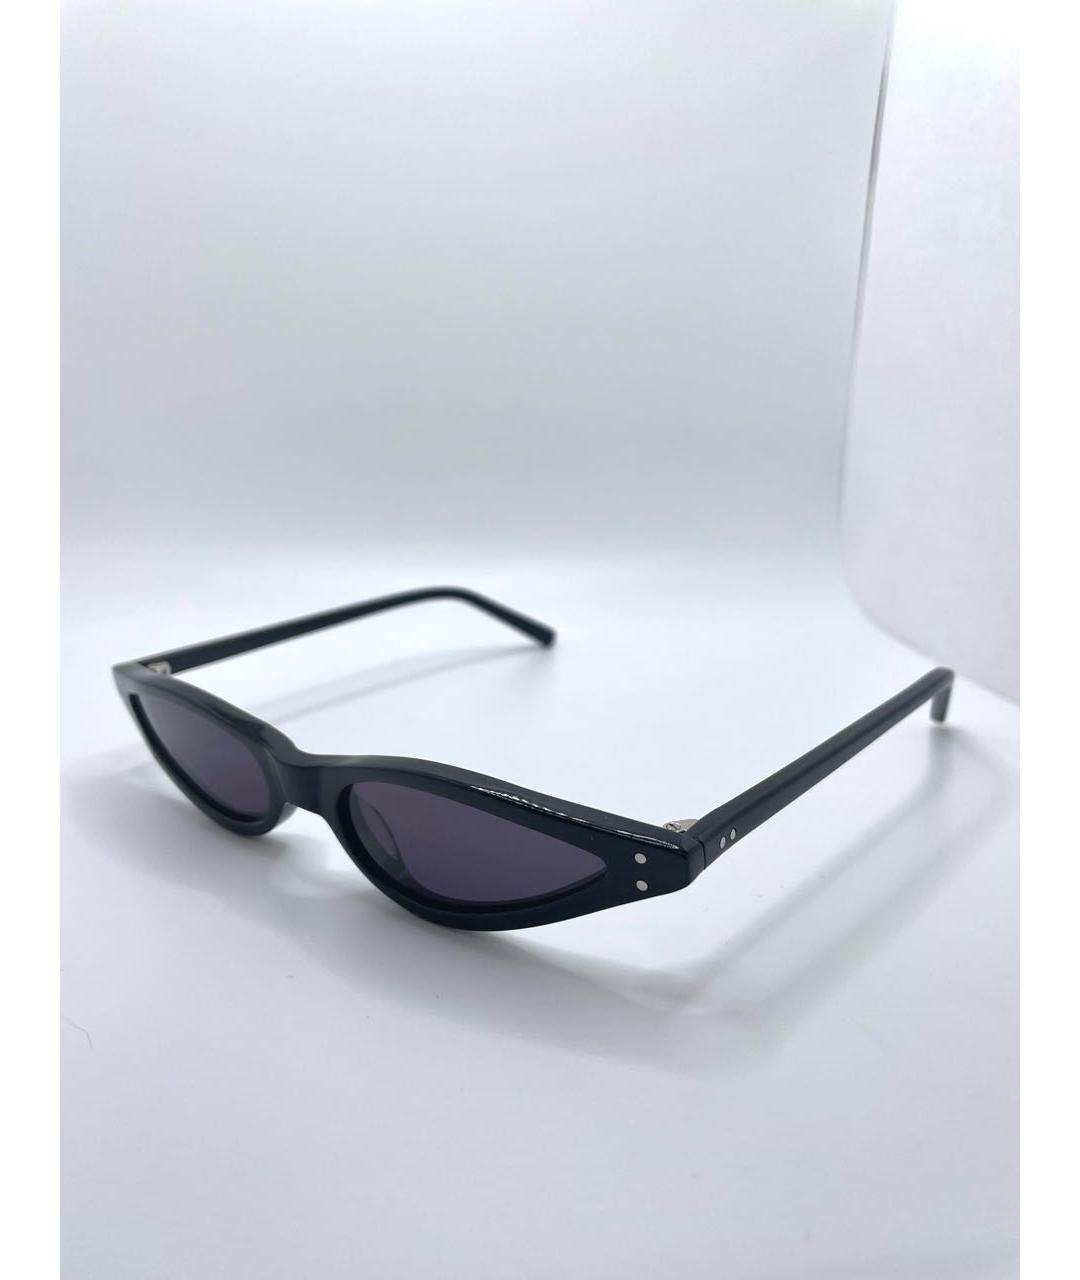 GEORGE KEBURIA Черные пластиковые солнцезащитные очки, фото 2